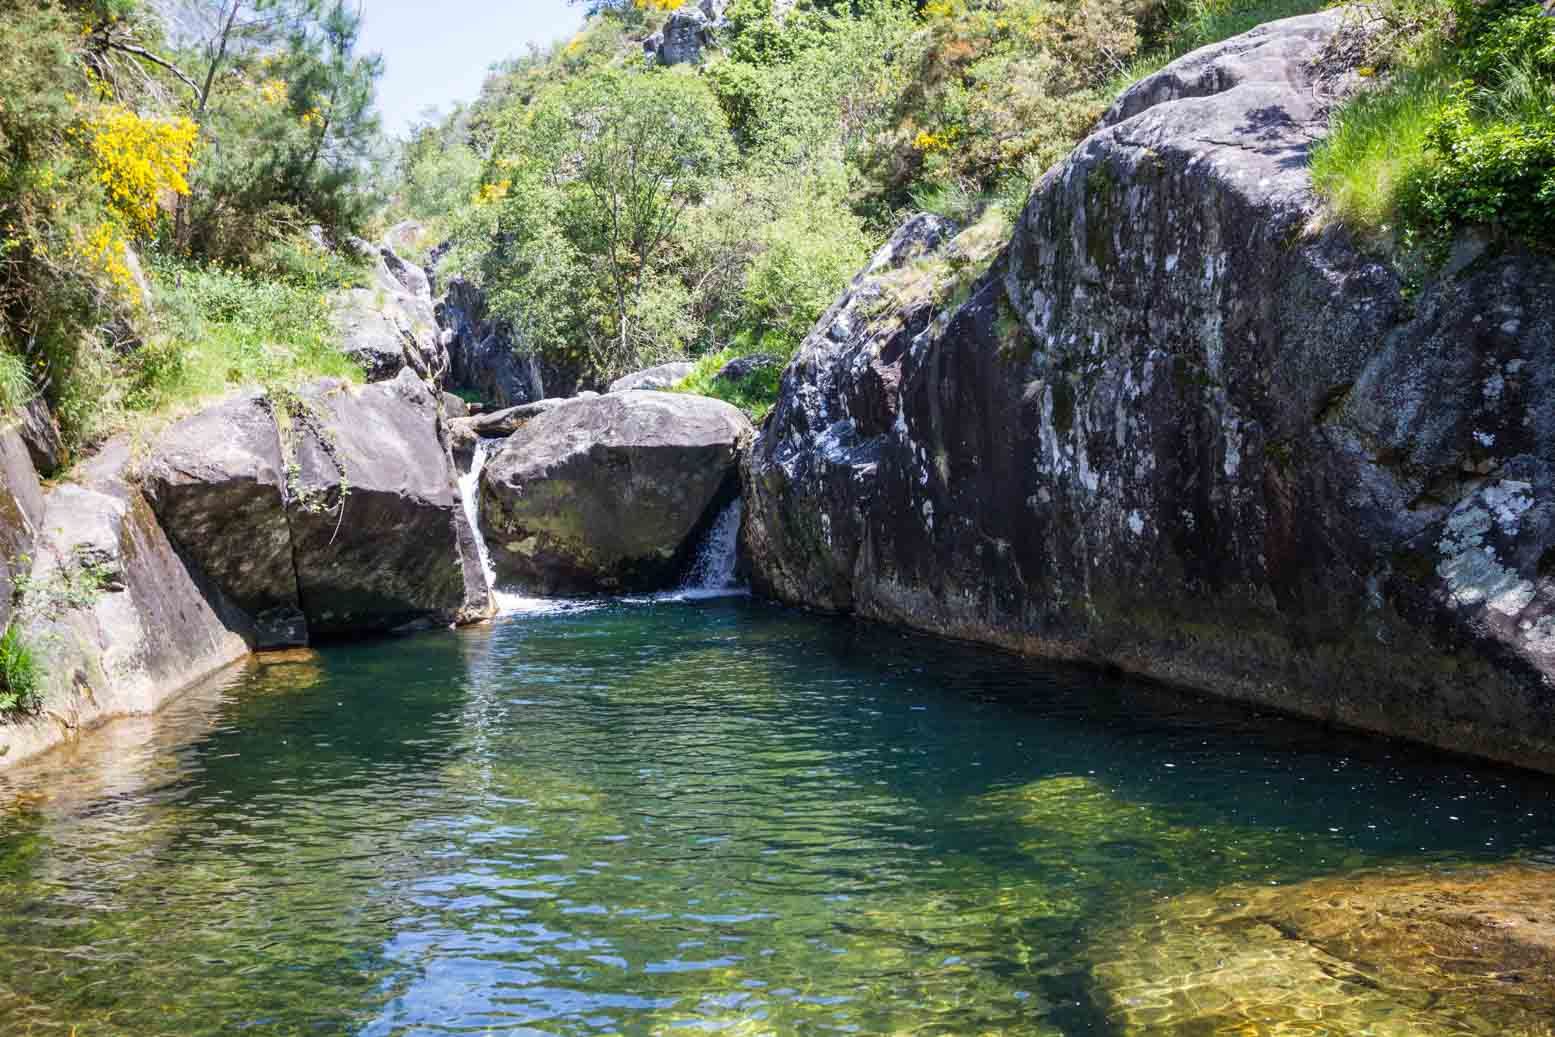 Piscinas naturais no río Pedras.